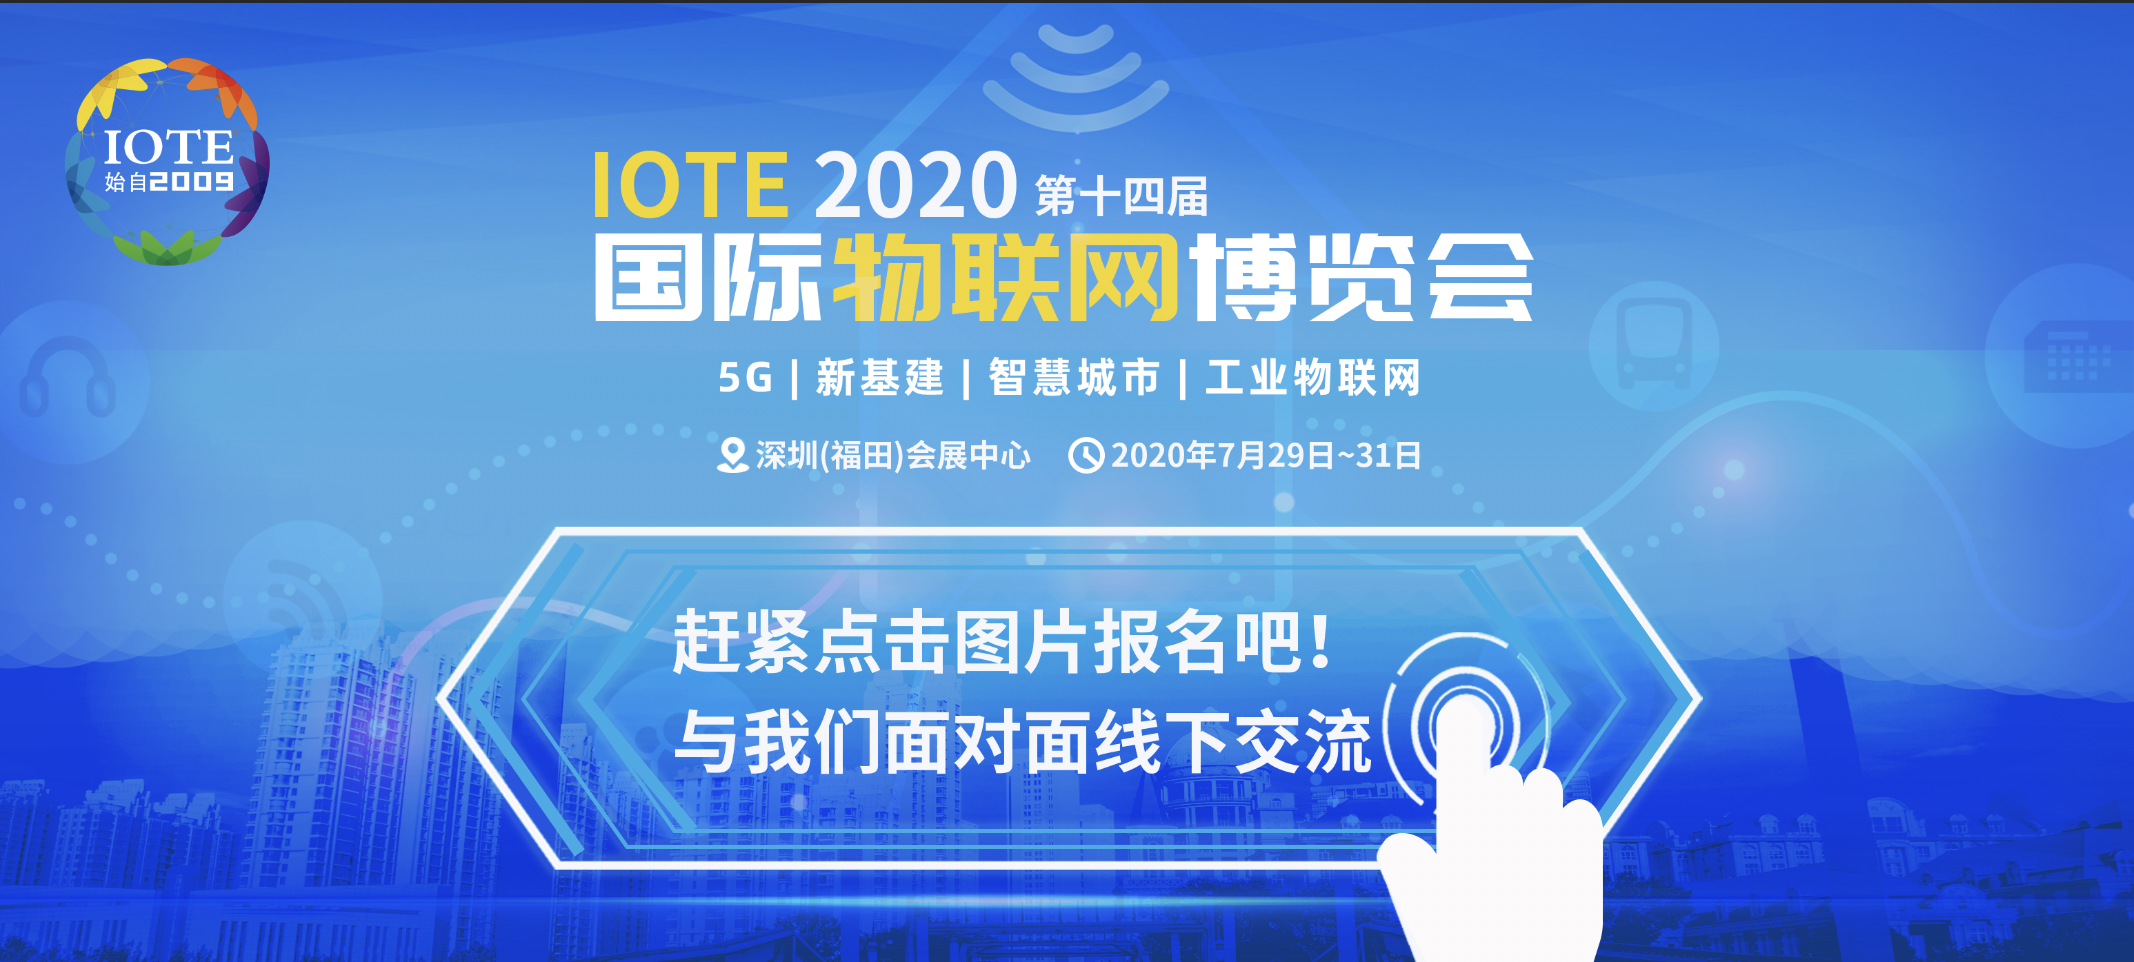 【IOTE 深圳秀】貝銳科技將亮相IOTE 2020深圳國際物聯網展